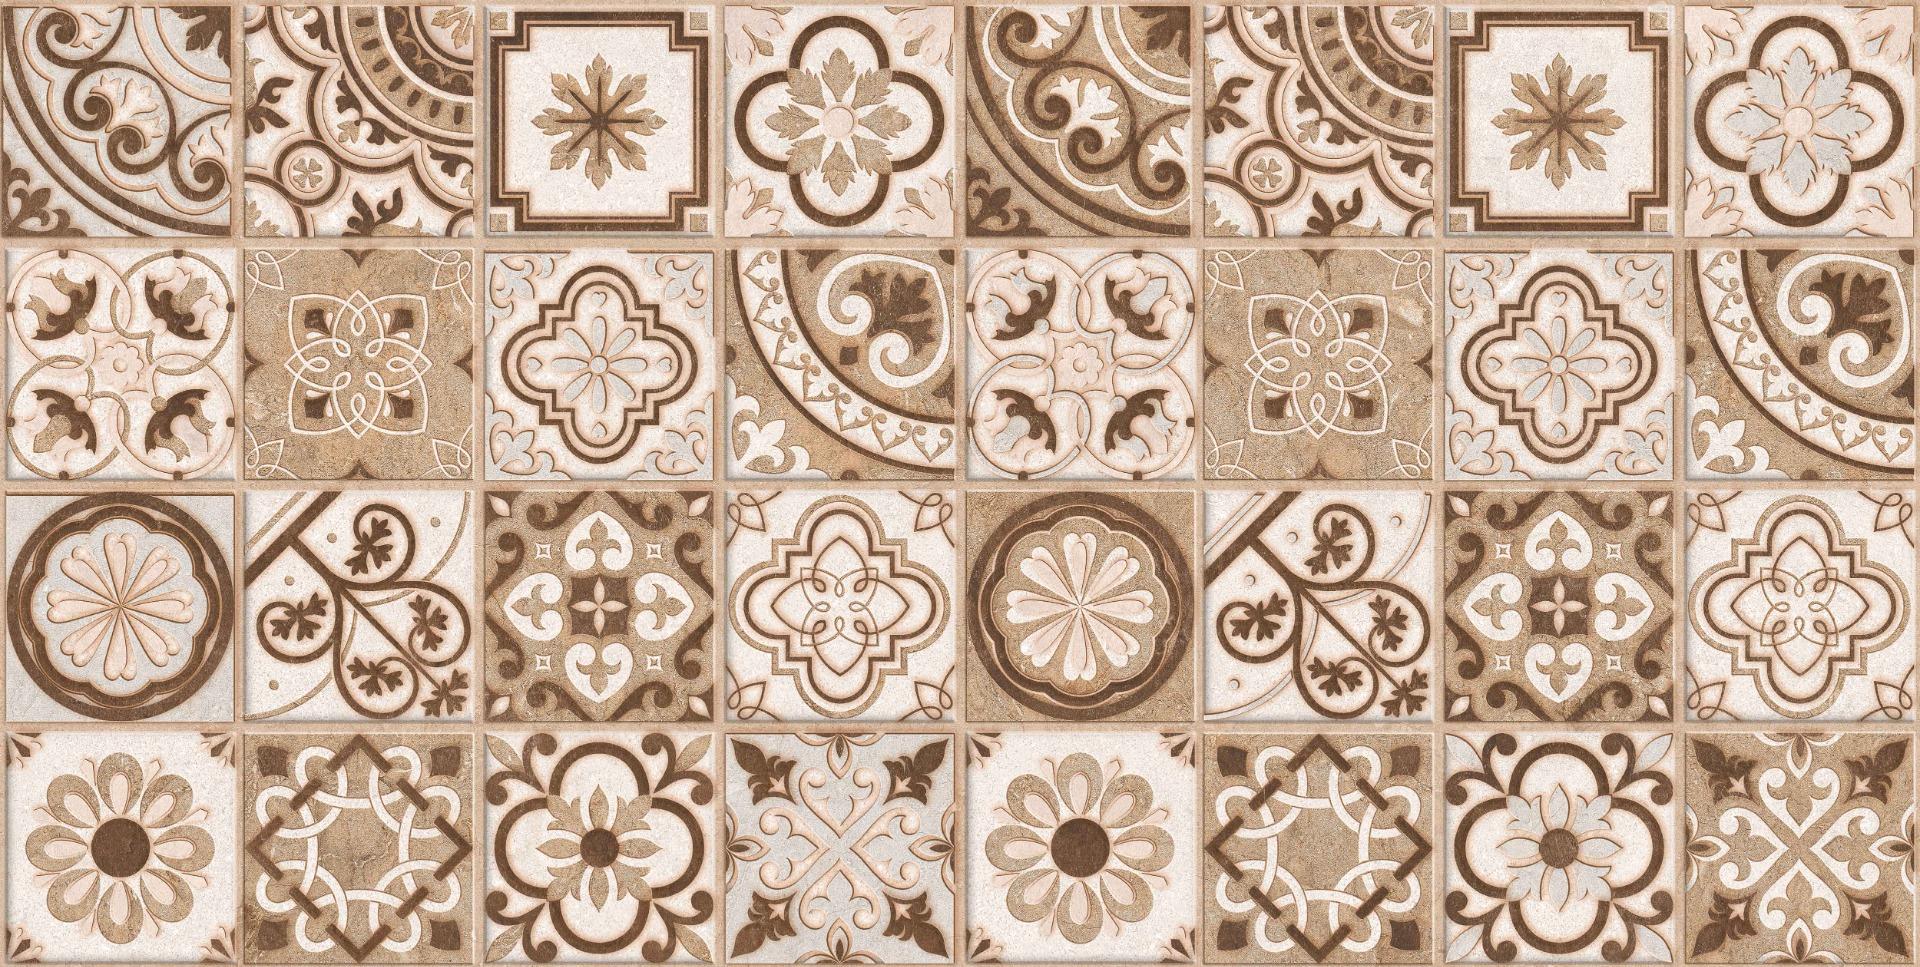 Vitrified Tiles for Bathroom Tiles, Living Room Tiles, Kitchen Tiles, Bedroom Tiles, Accent Tiles, Bar/Restaurant